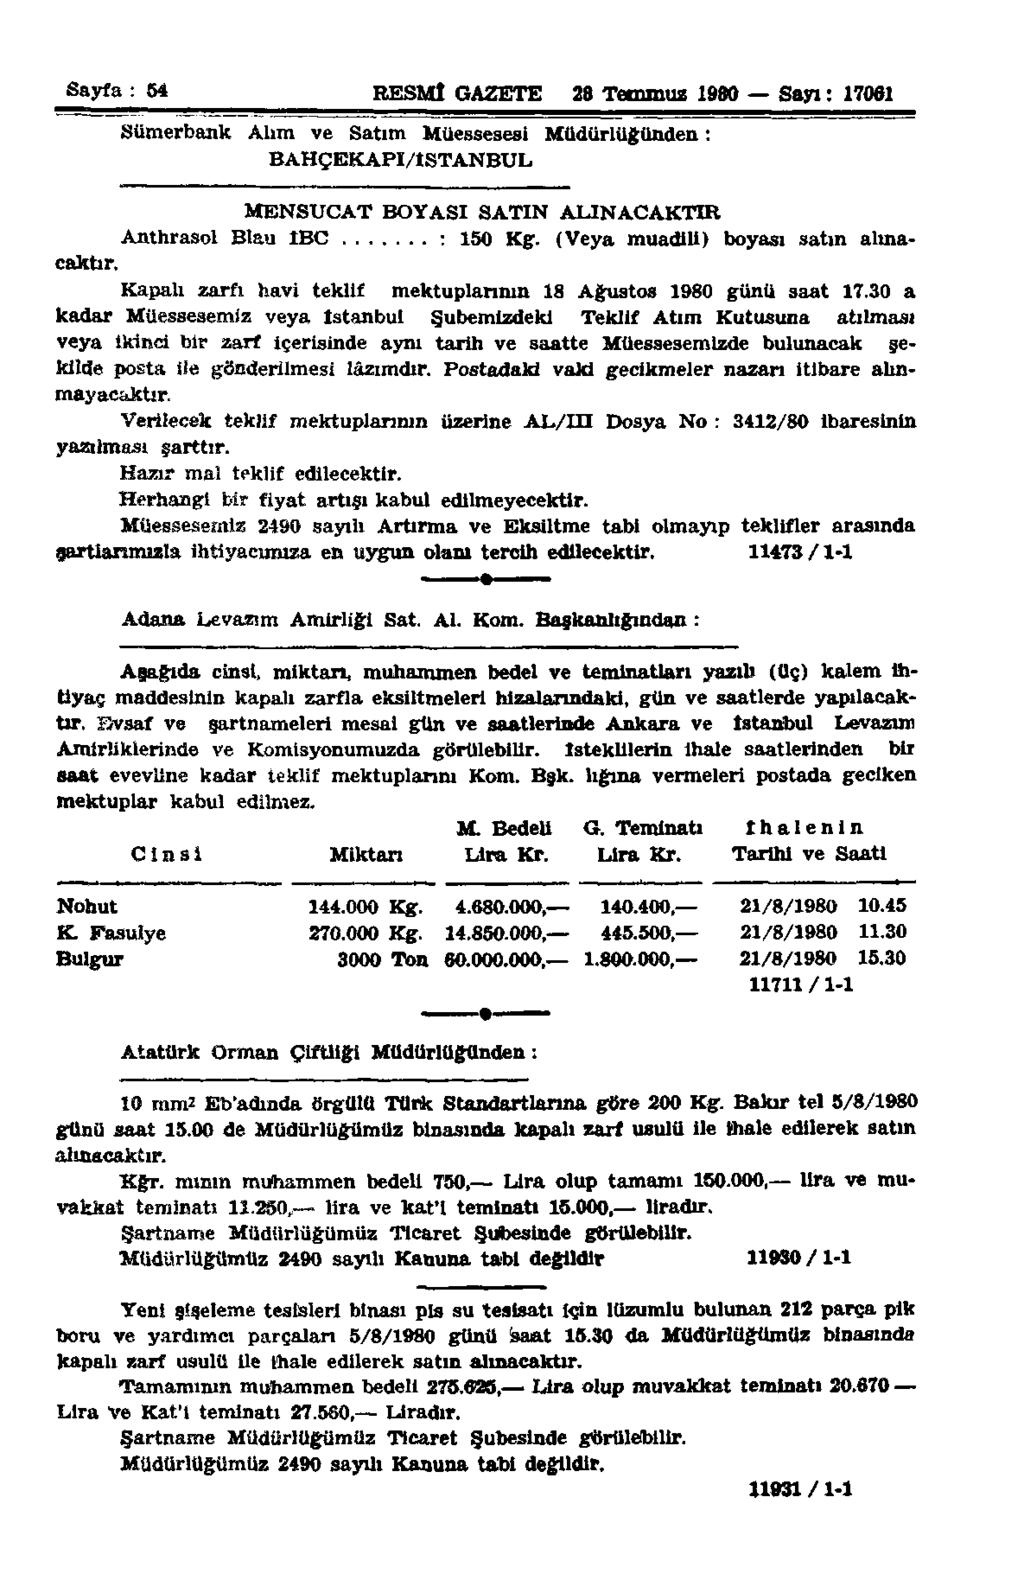 Sayfa : 54 RESMÎ GAZETE 28 Temmuz 1980 Sayı: 17061 Sümerbank Alım ve Satım Müessesesi Müdürlüğünden: BAHÇEKAPI/tSTANBUL Anthrasol Blau IBC : 150 Kg. (Veya muadili) boyası satın alınacaktır.